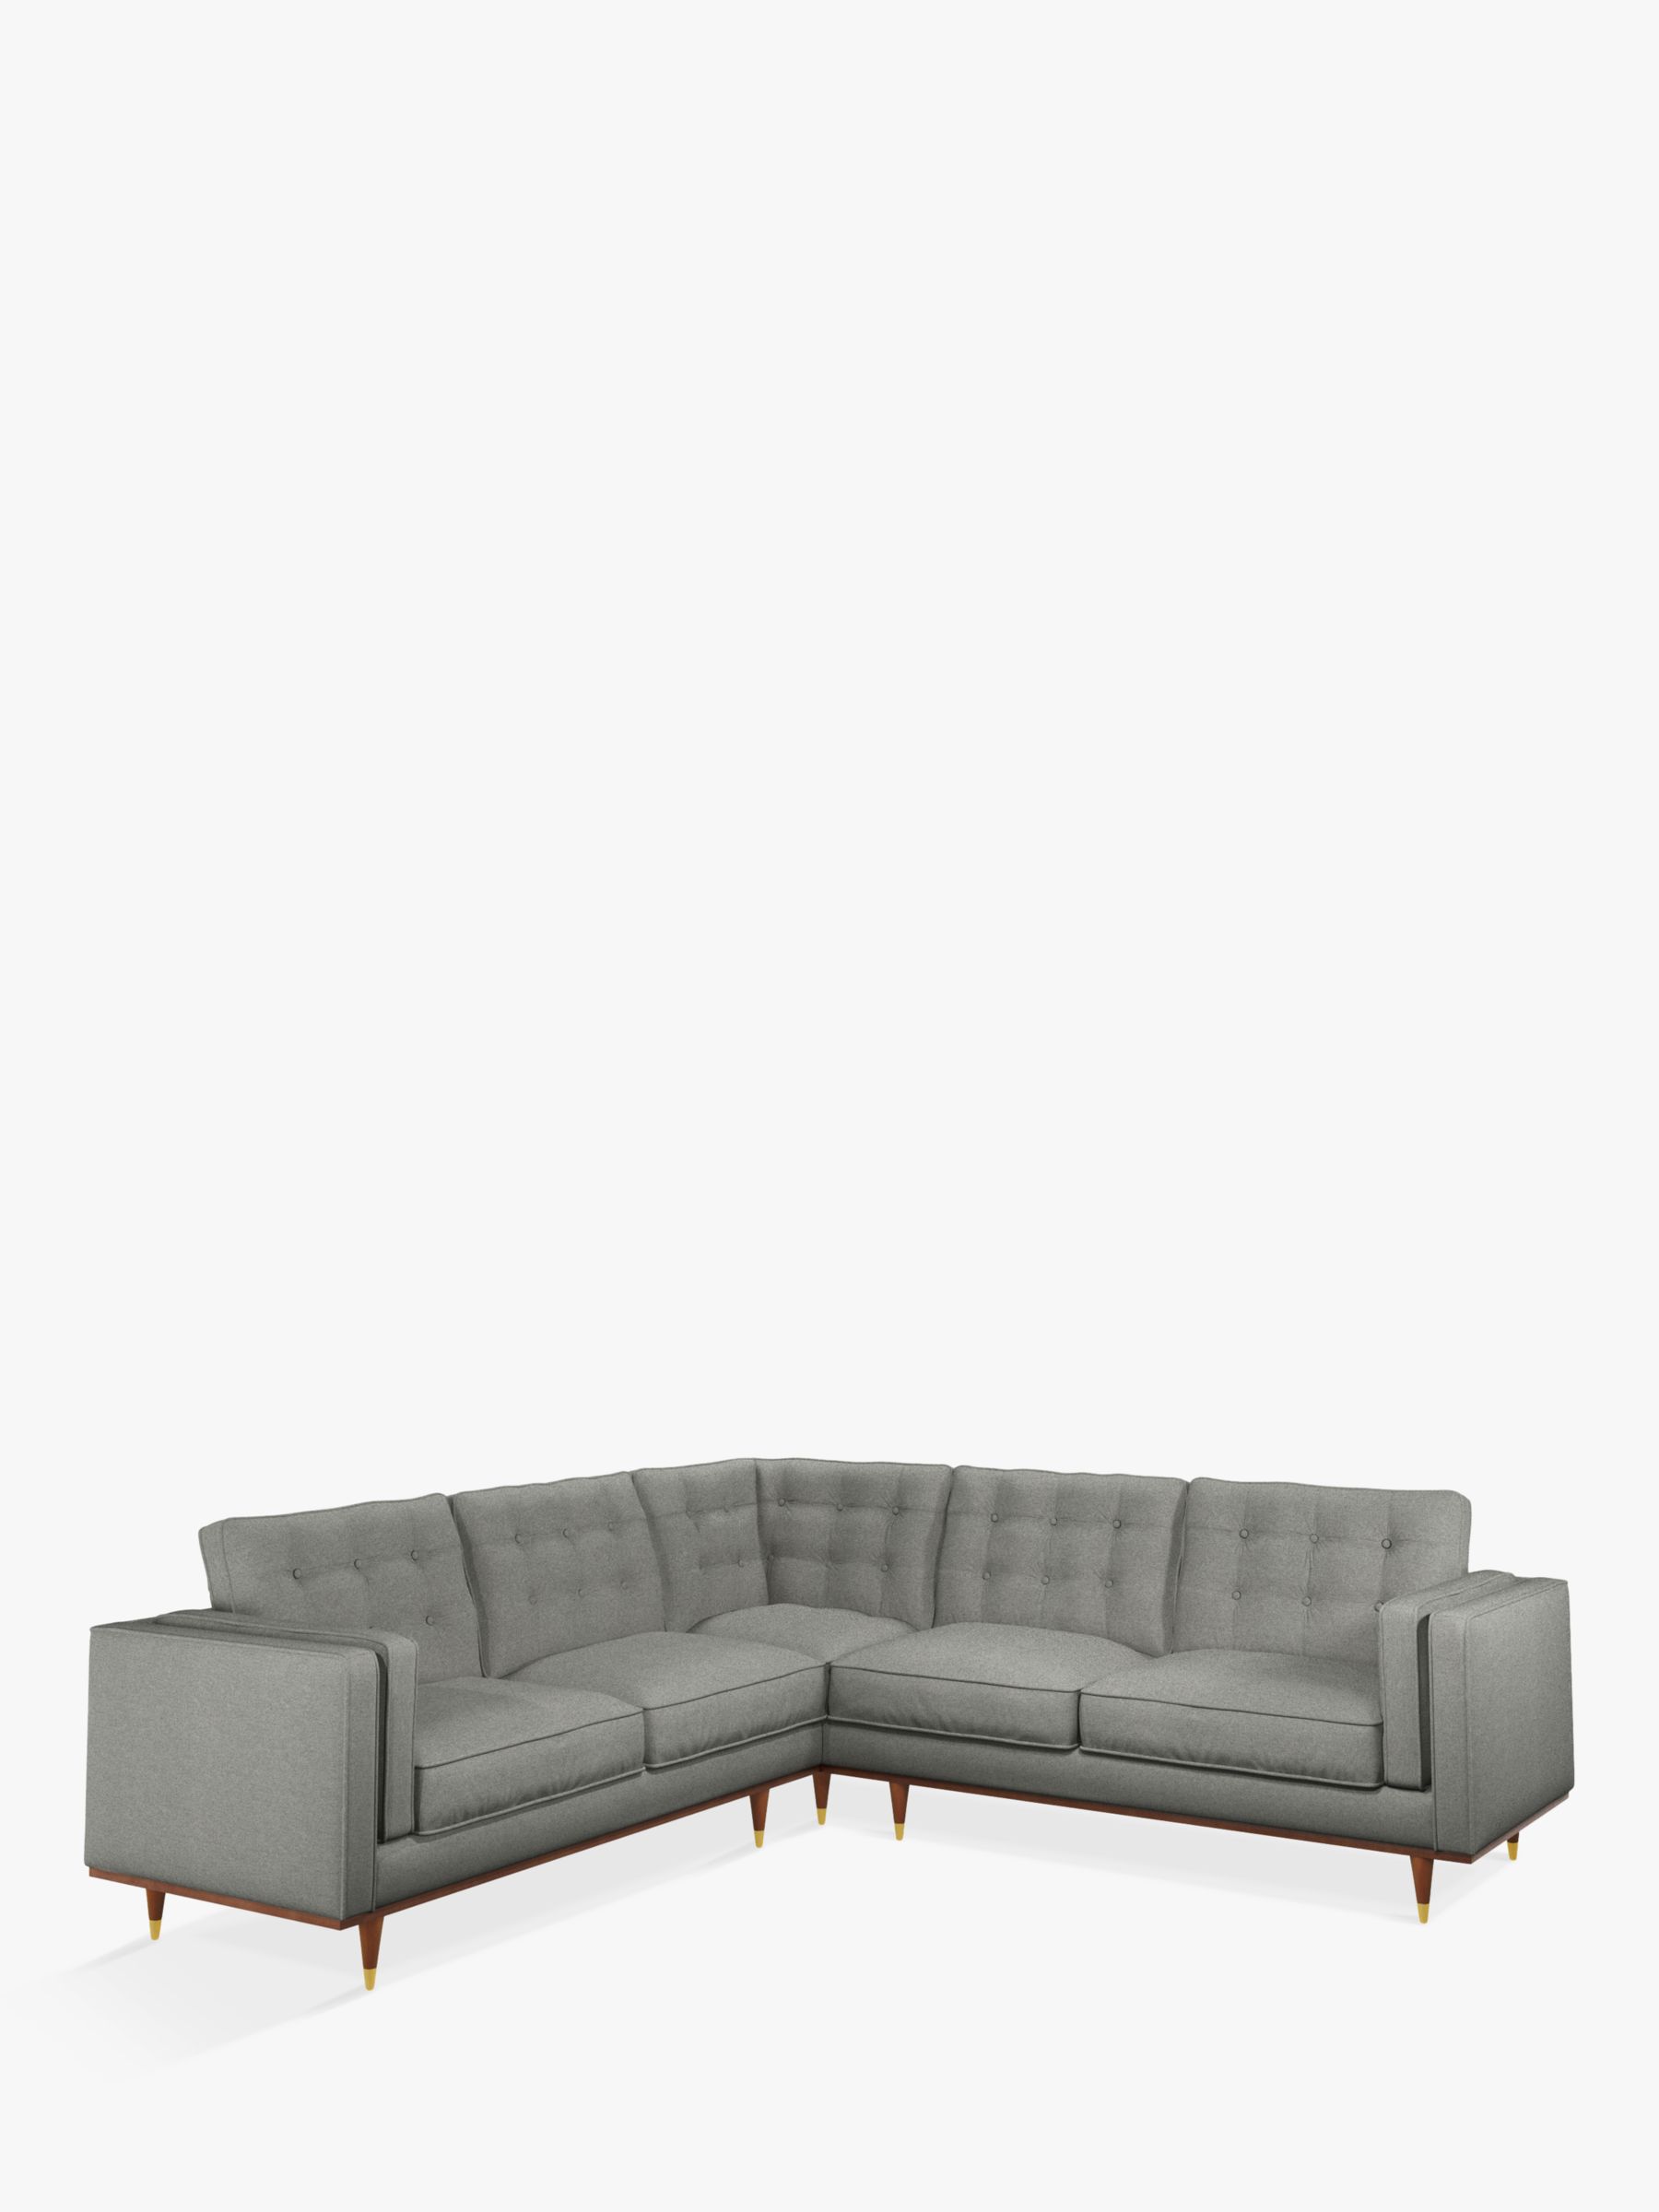 Lyon Range, John Lewis + Swoon Lyon Large 5+ Seater Corner Sofa, Grey Cotton